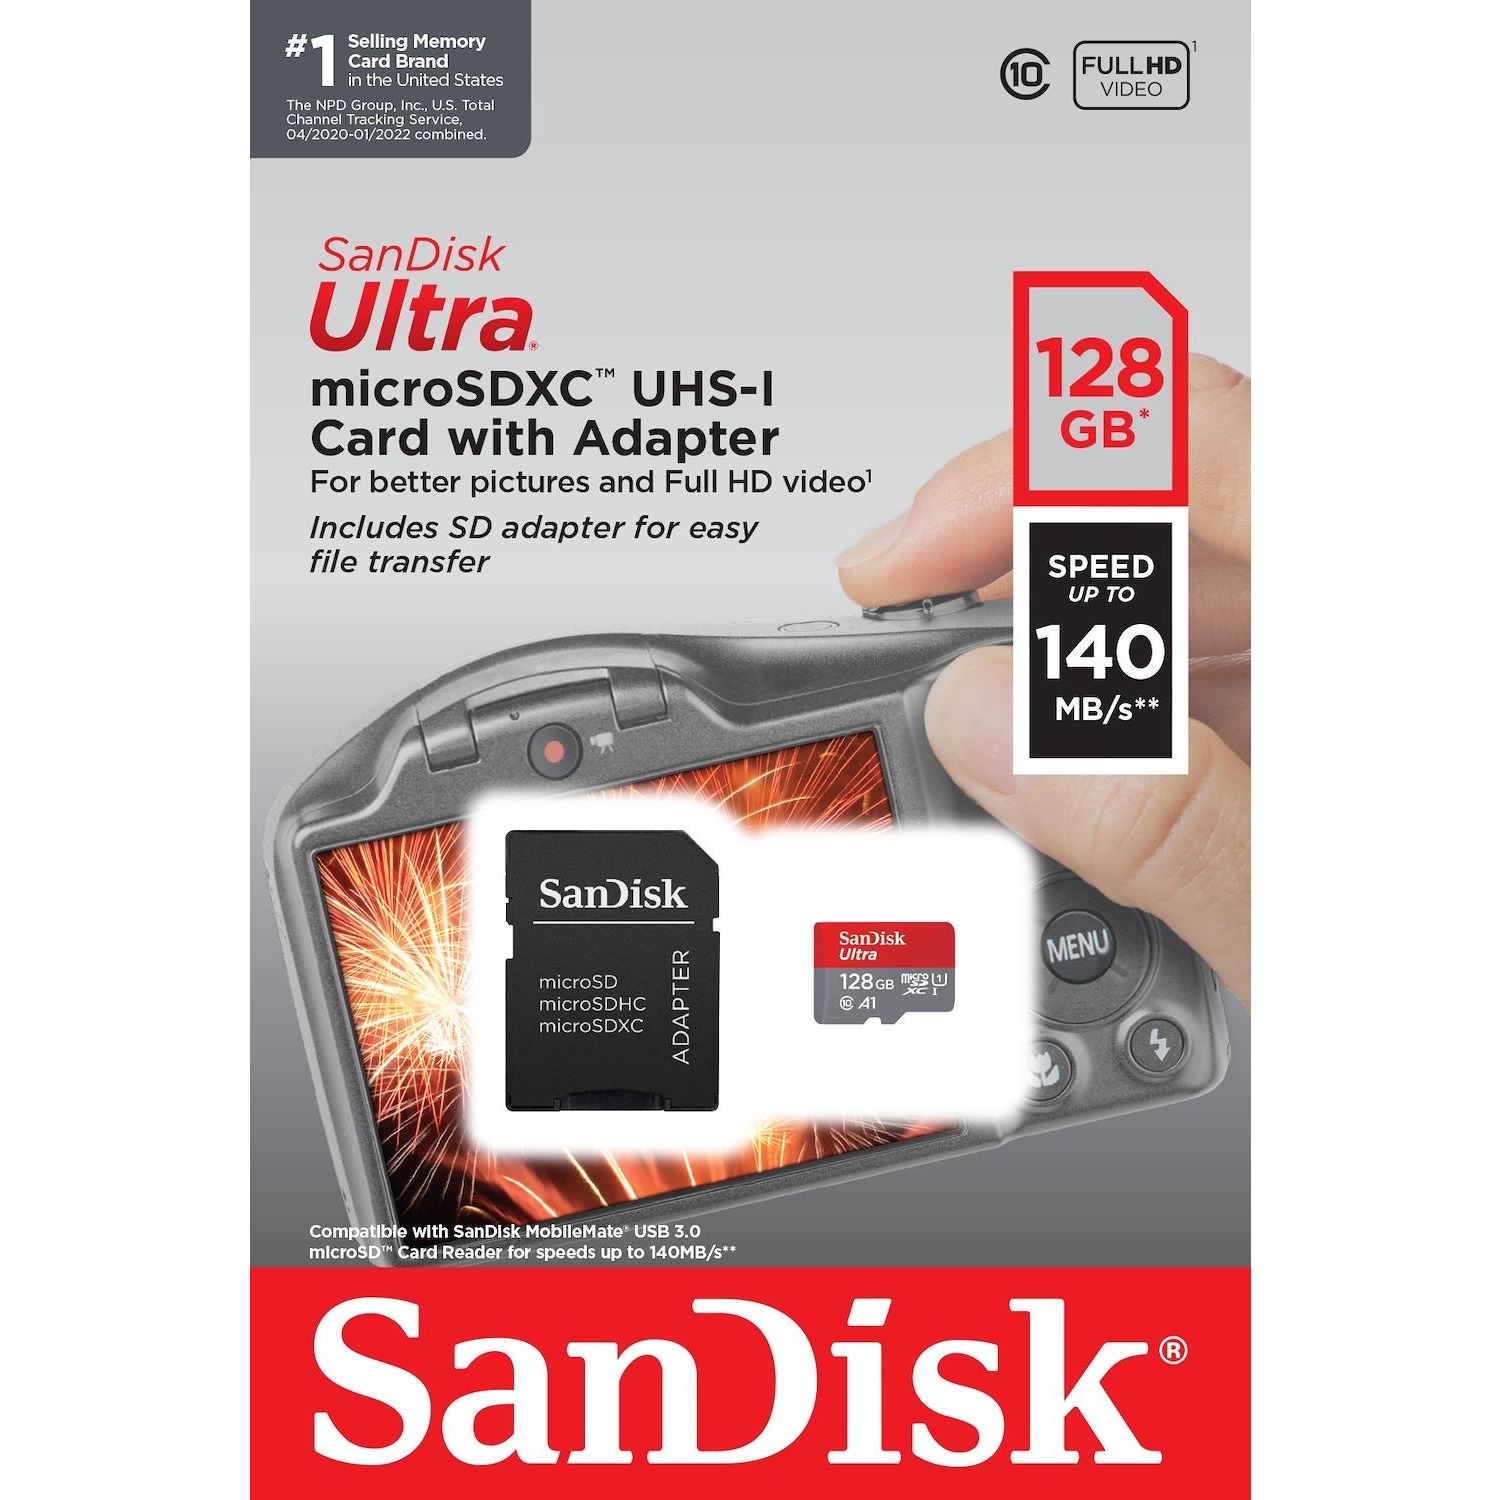 Immagine per MicroSD SanDisk Ultra Mobile android 128GB XC con adattatore SD da DIMOStore